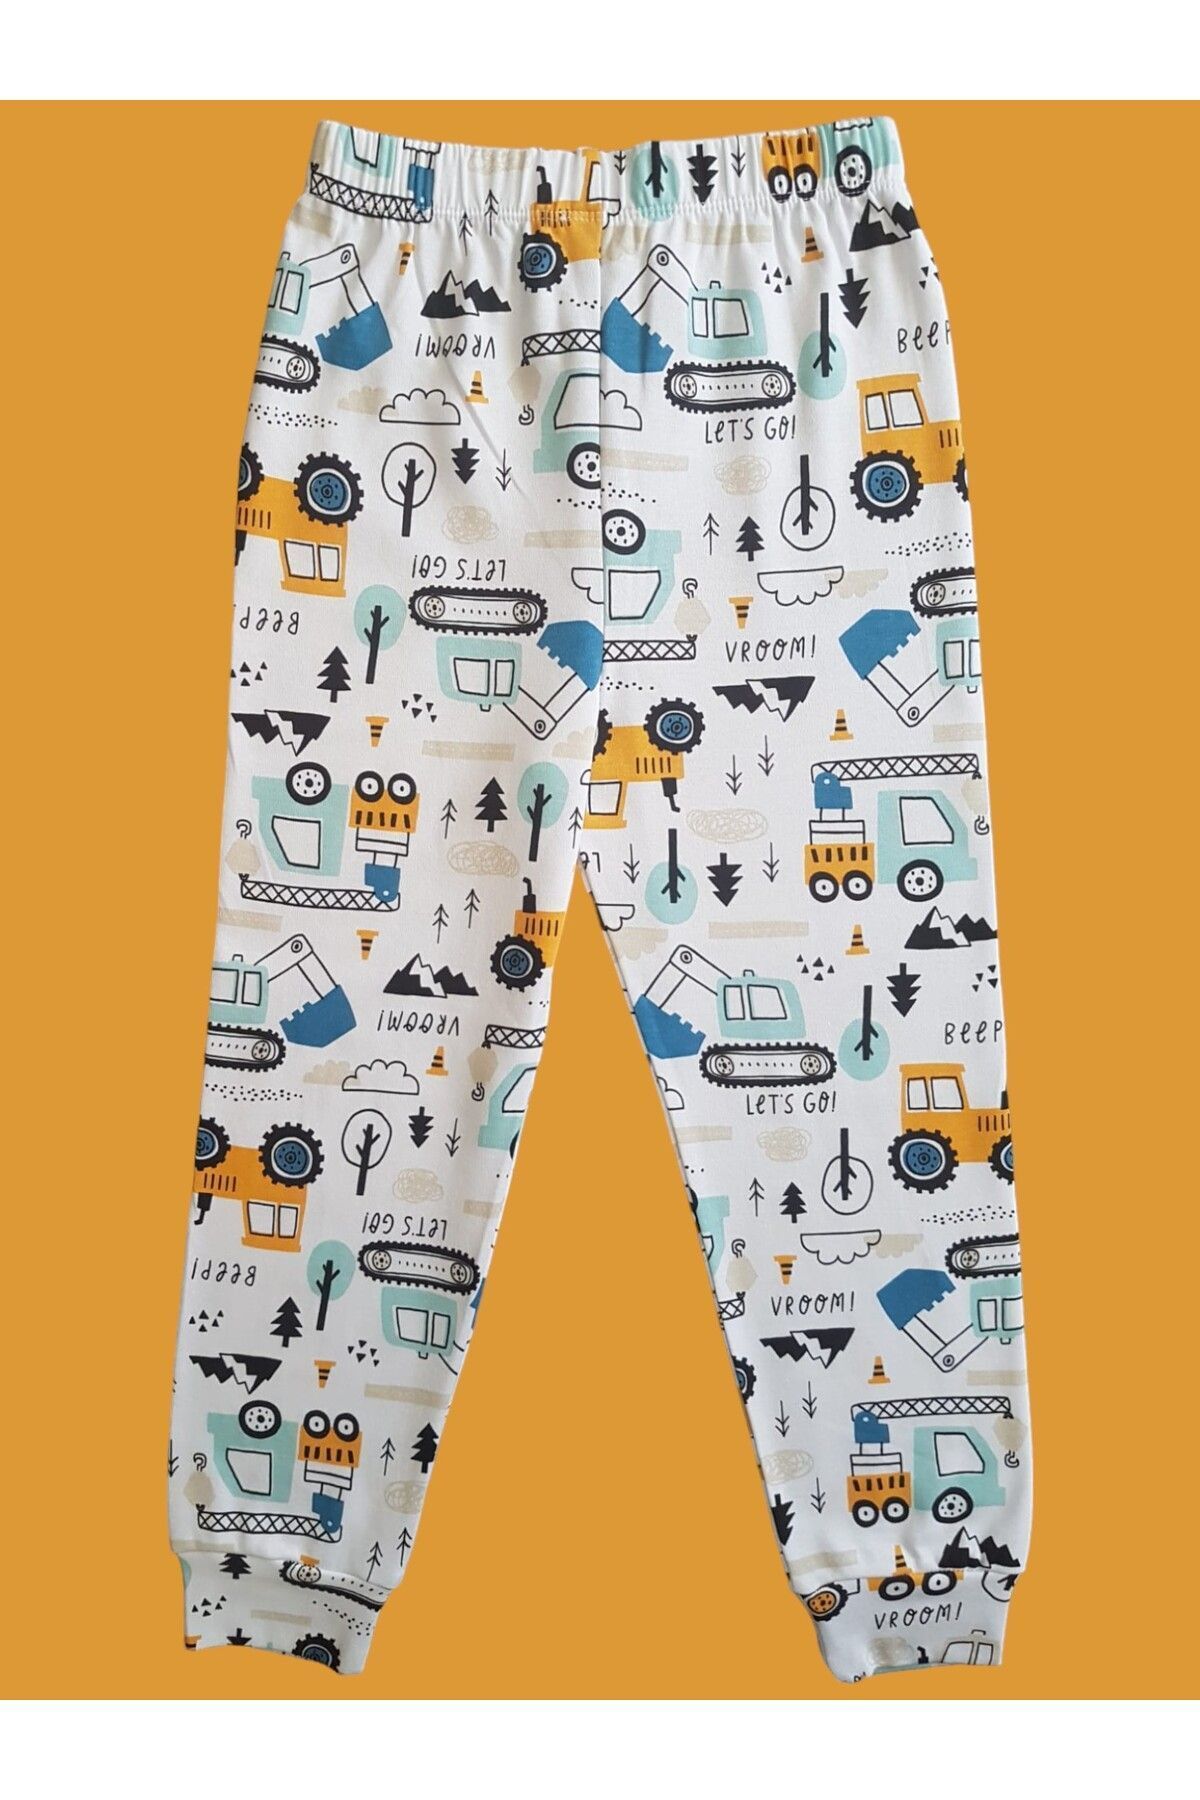 Çamaşır Bahçesi Desenli Çocuk pijama altı #desenlipijamaaltı #baskılıpijamaaltı #çamaşırbahçesi #arabapijamaaltı